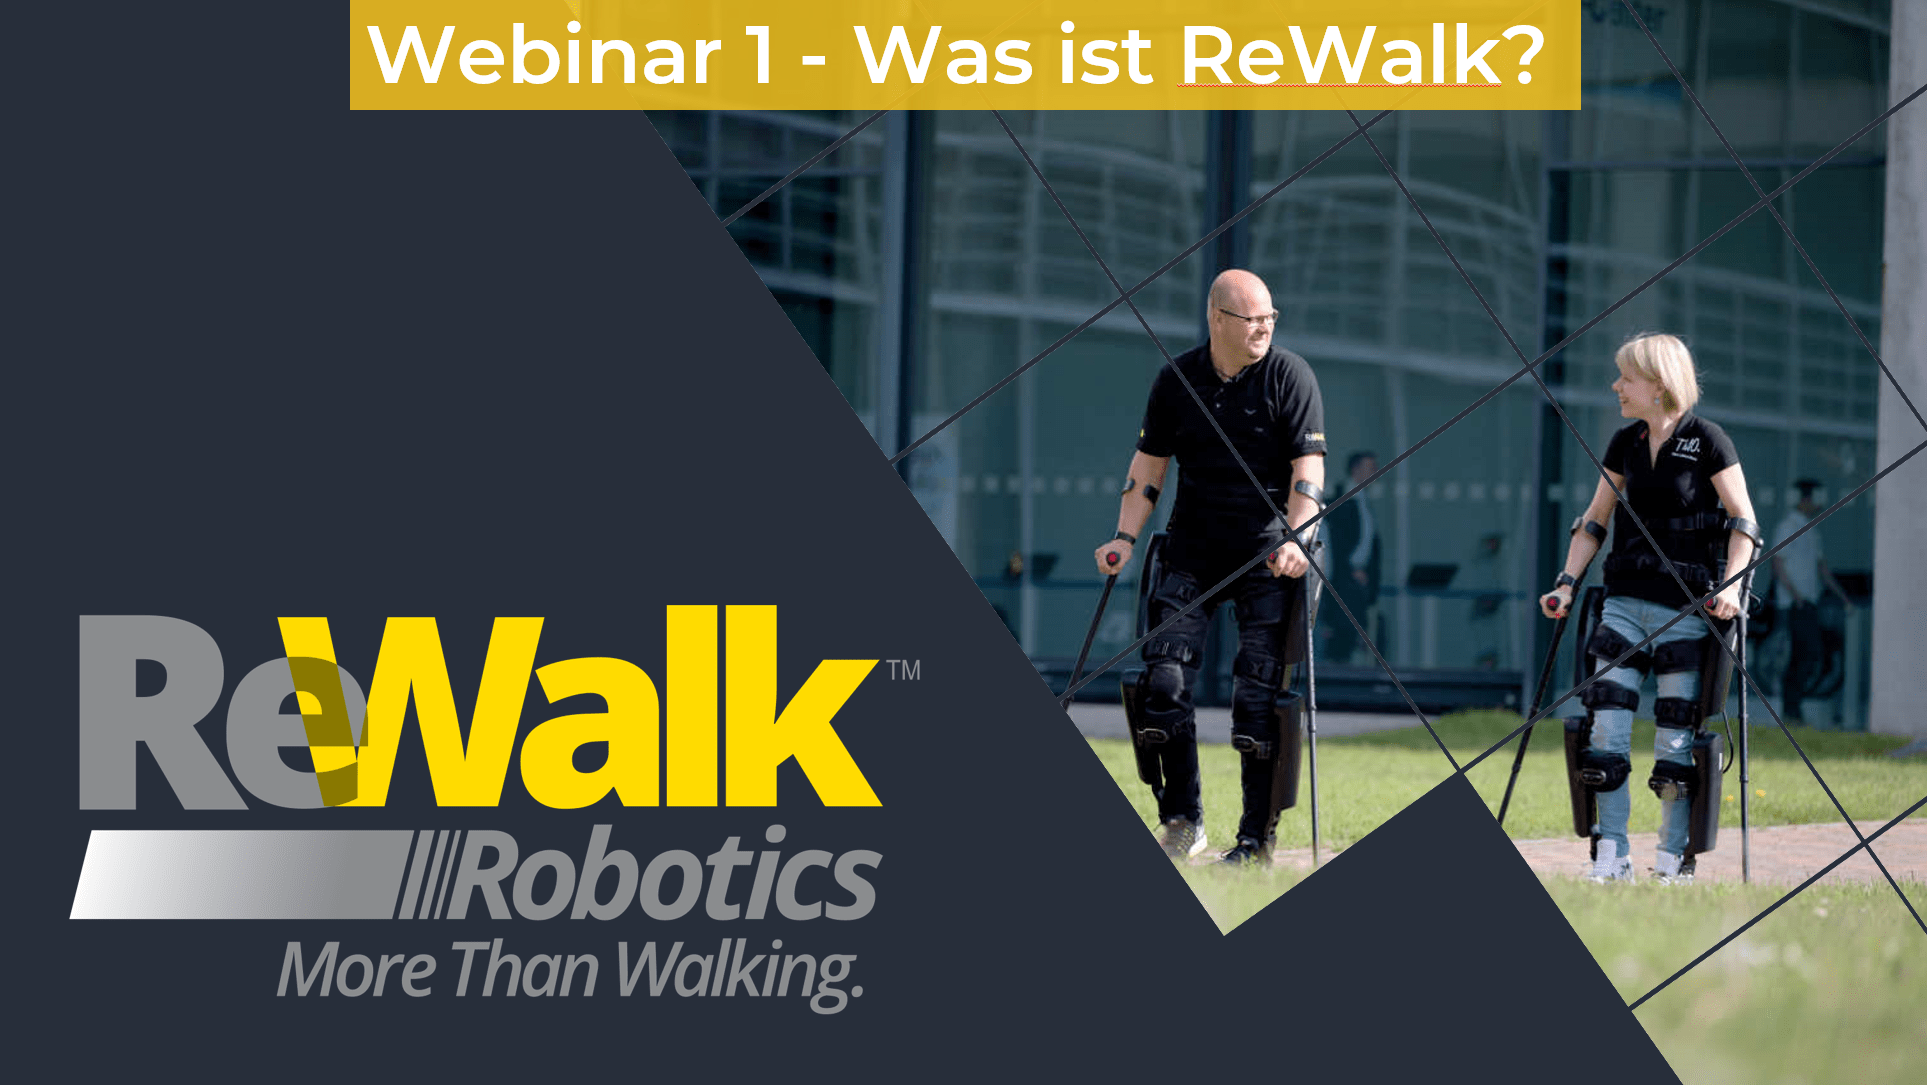 Webinar 1 was ist rewalk